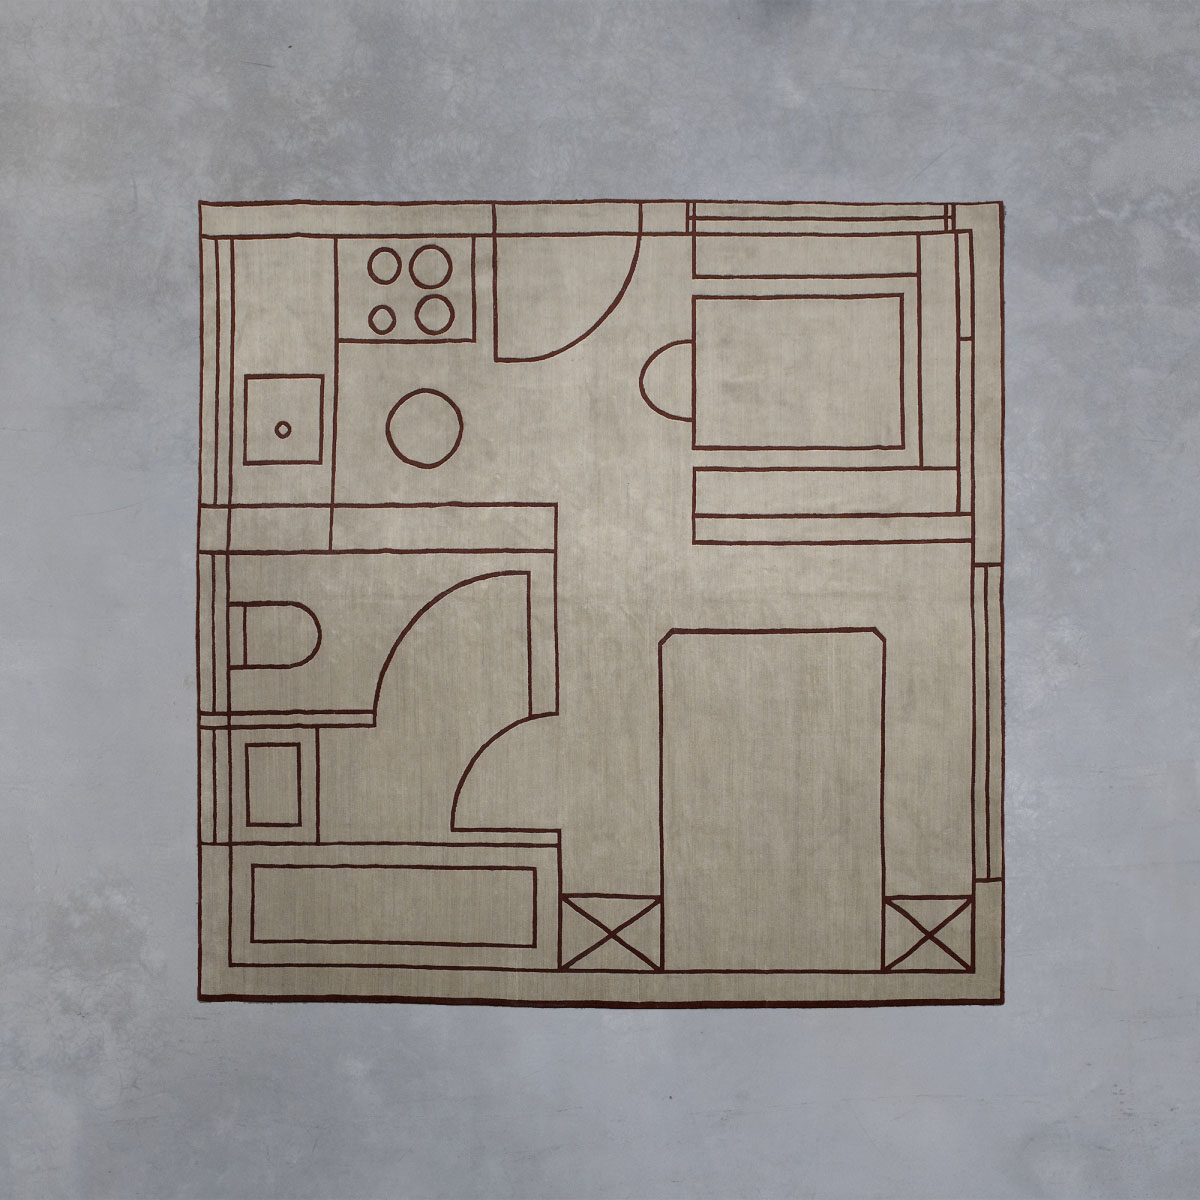 'House Plan' carpet Martino Gamper pic-1